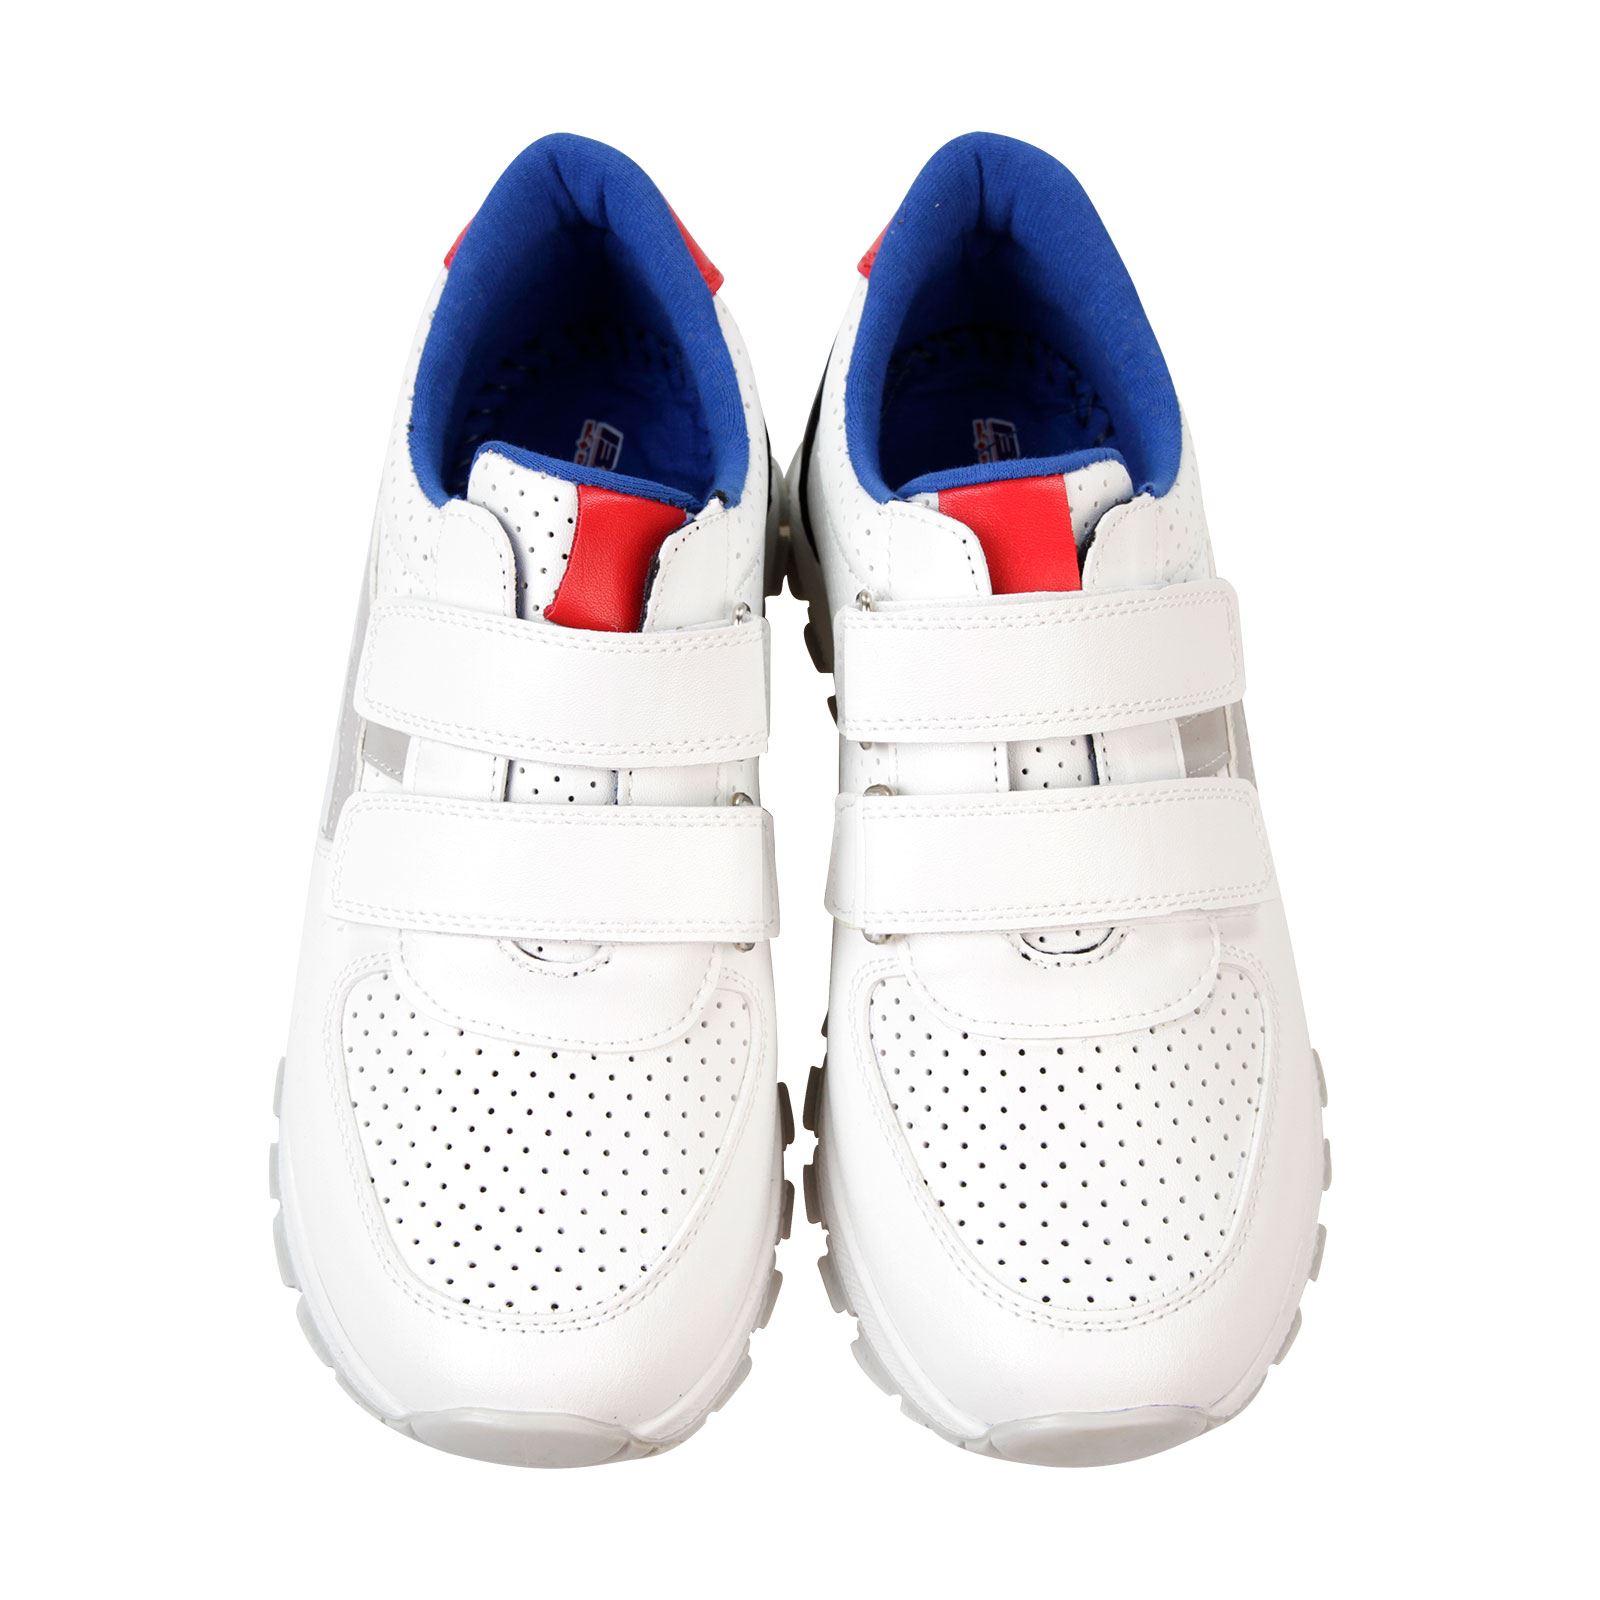 Barbone Erkek Çocuk Spor Ayakkabı 31-35 Numara Beyaz